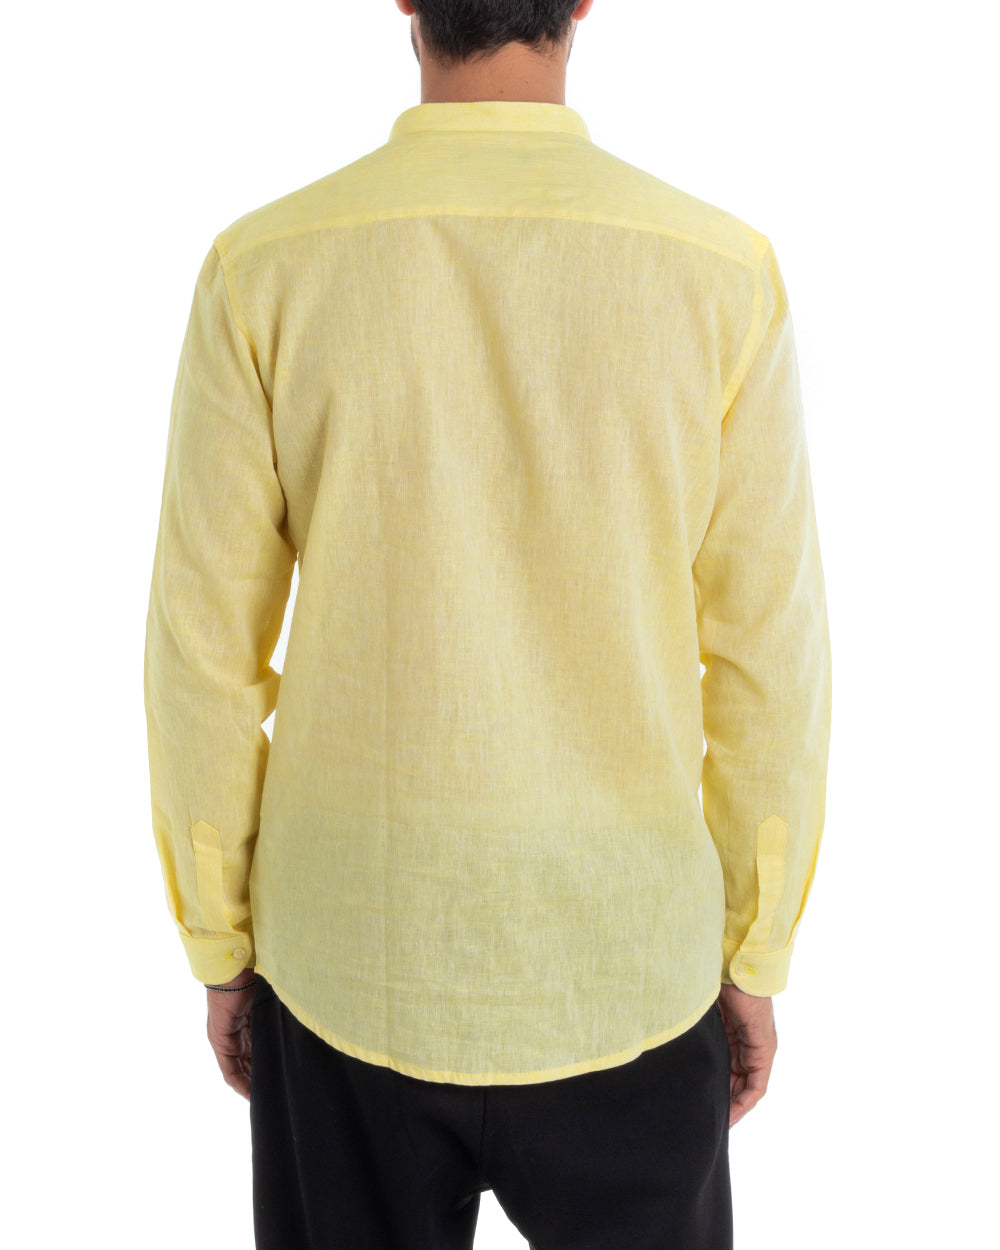 Camicia Uomo Collo Coreano Sartoriale Manica Lunga Lino Melangiata Giallo GIOSAL-C2692A